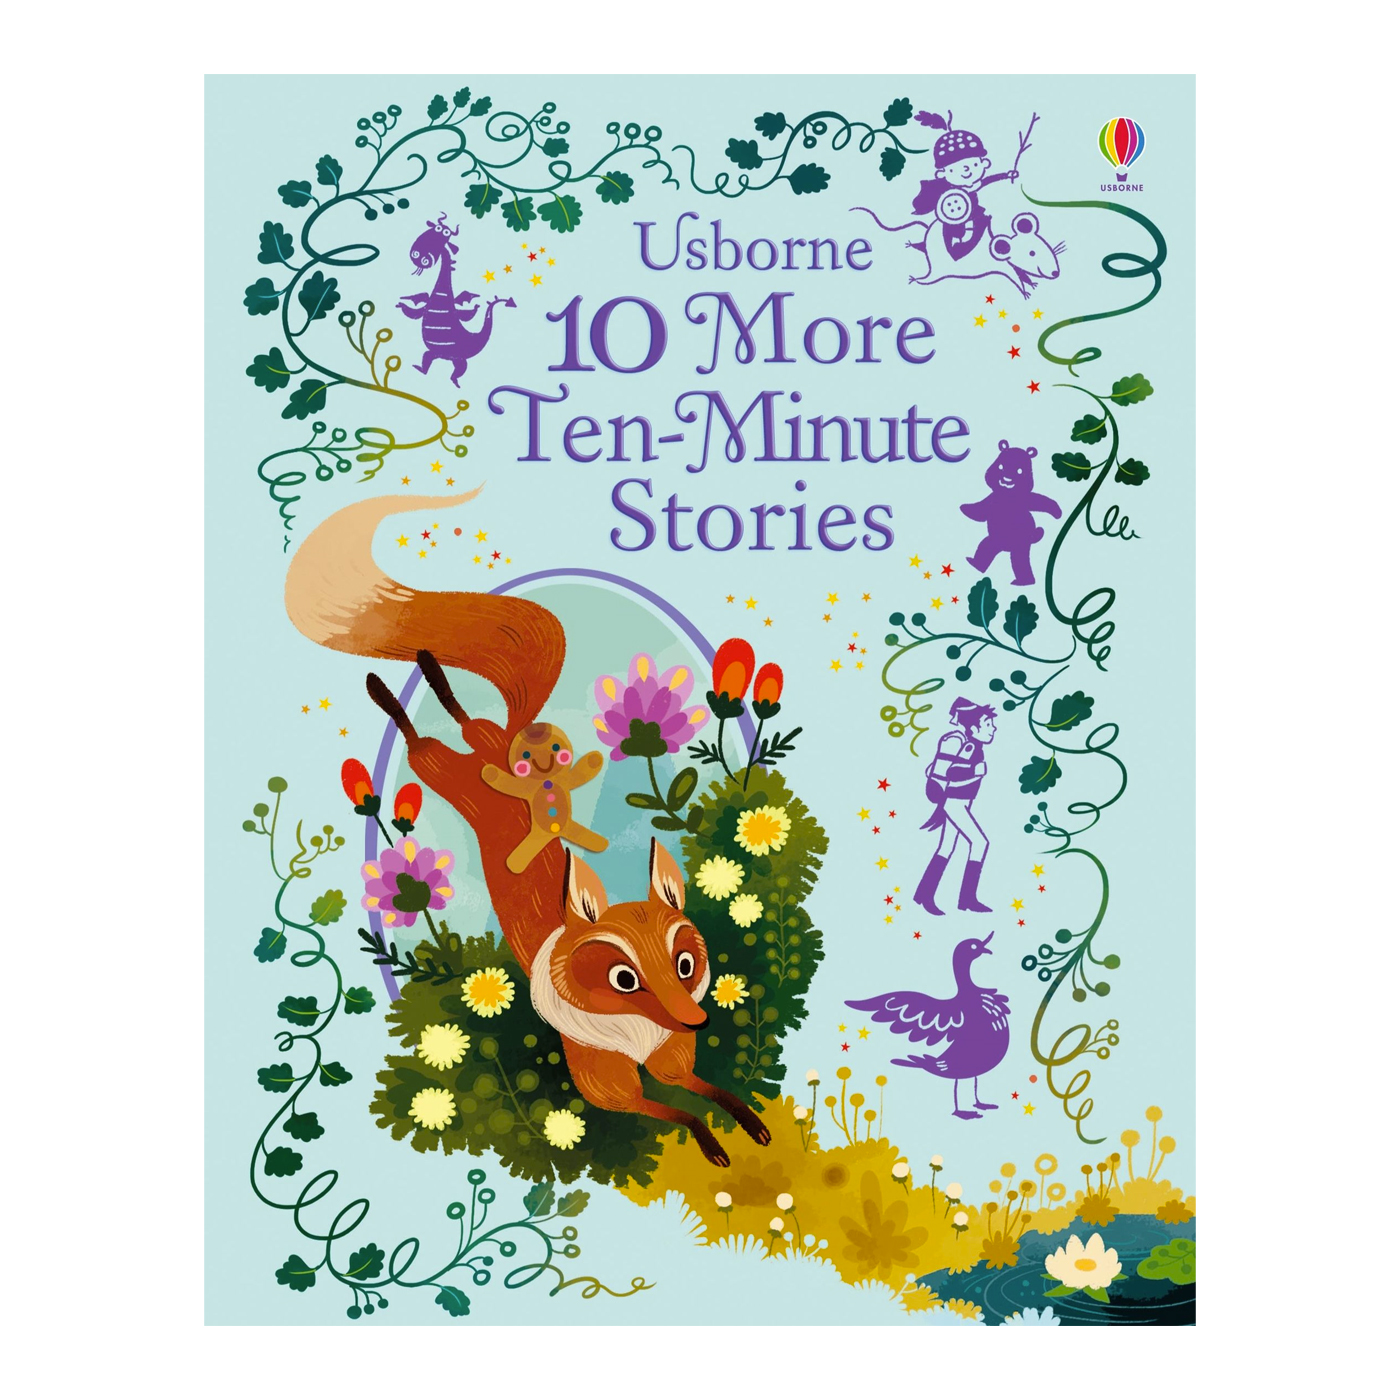  10 More Ten-Minute Stories